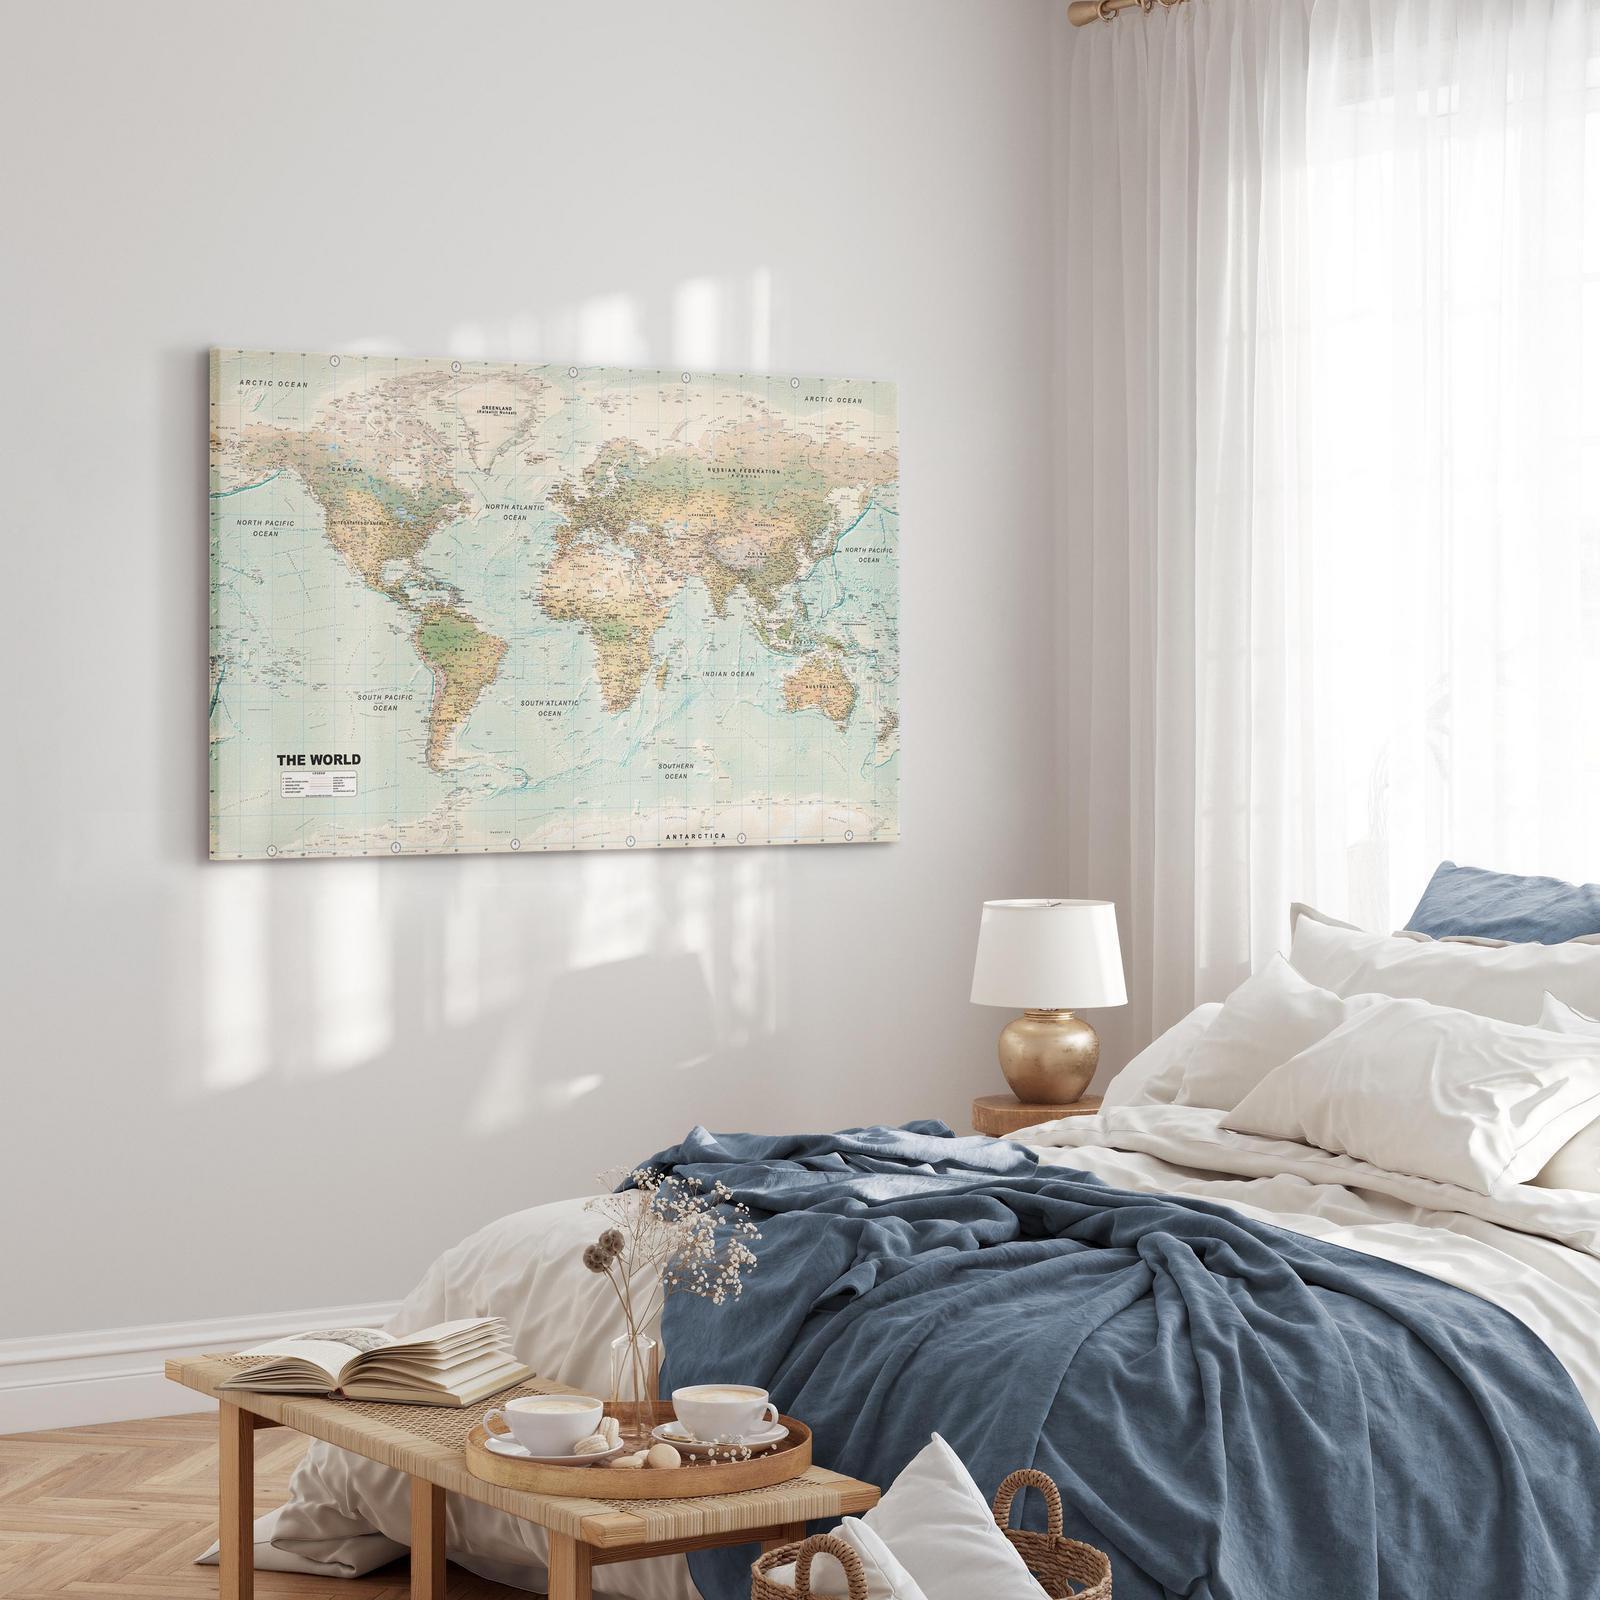 Tableau - World Map: Beautiful World